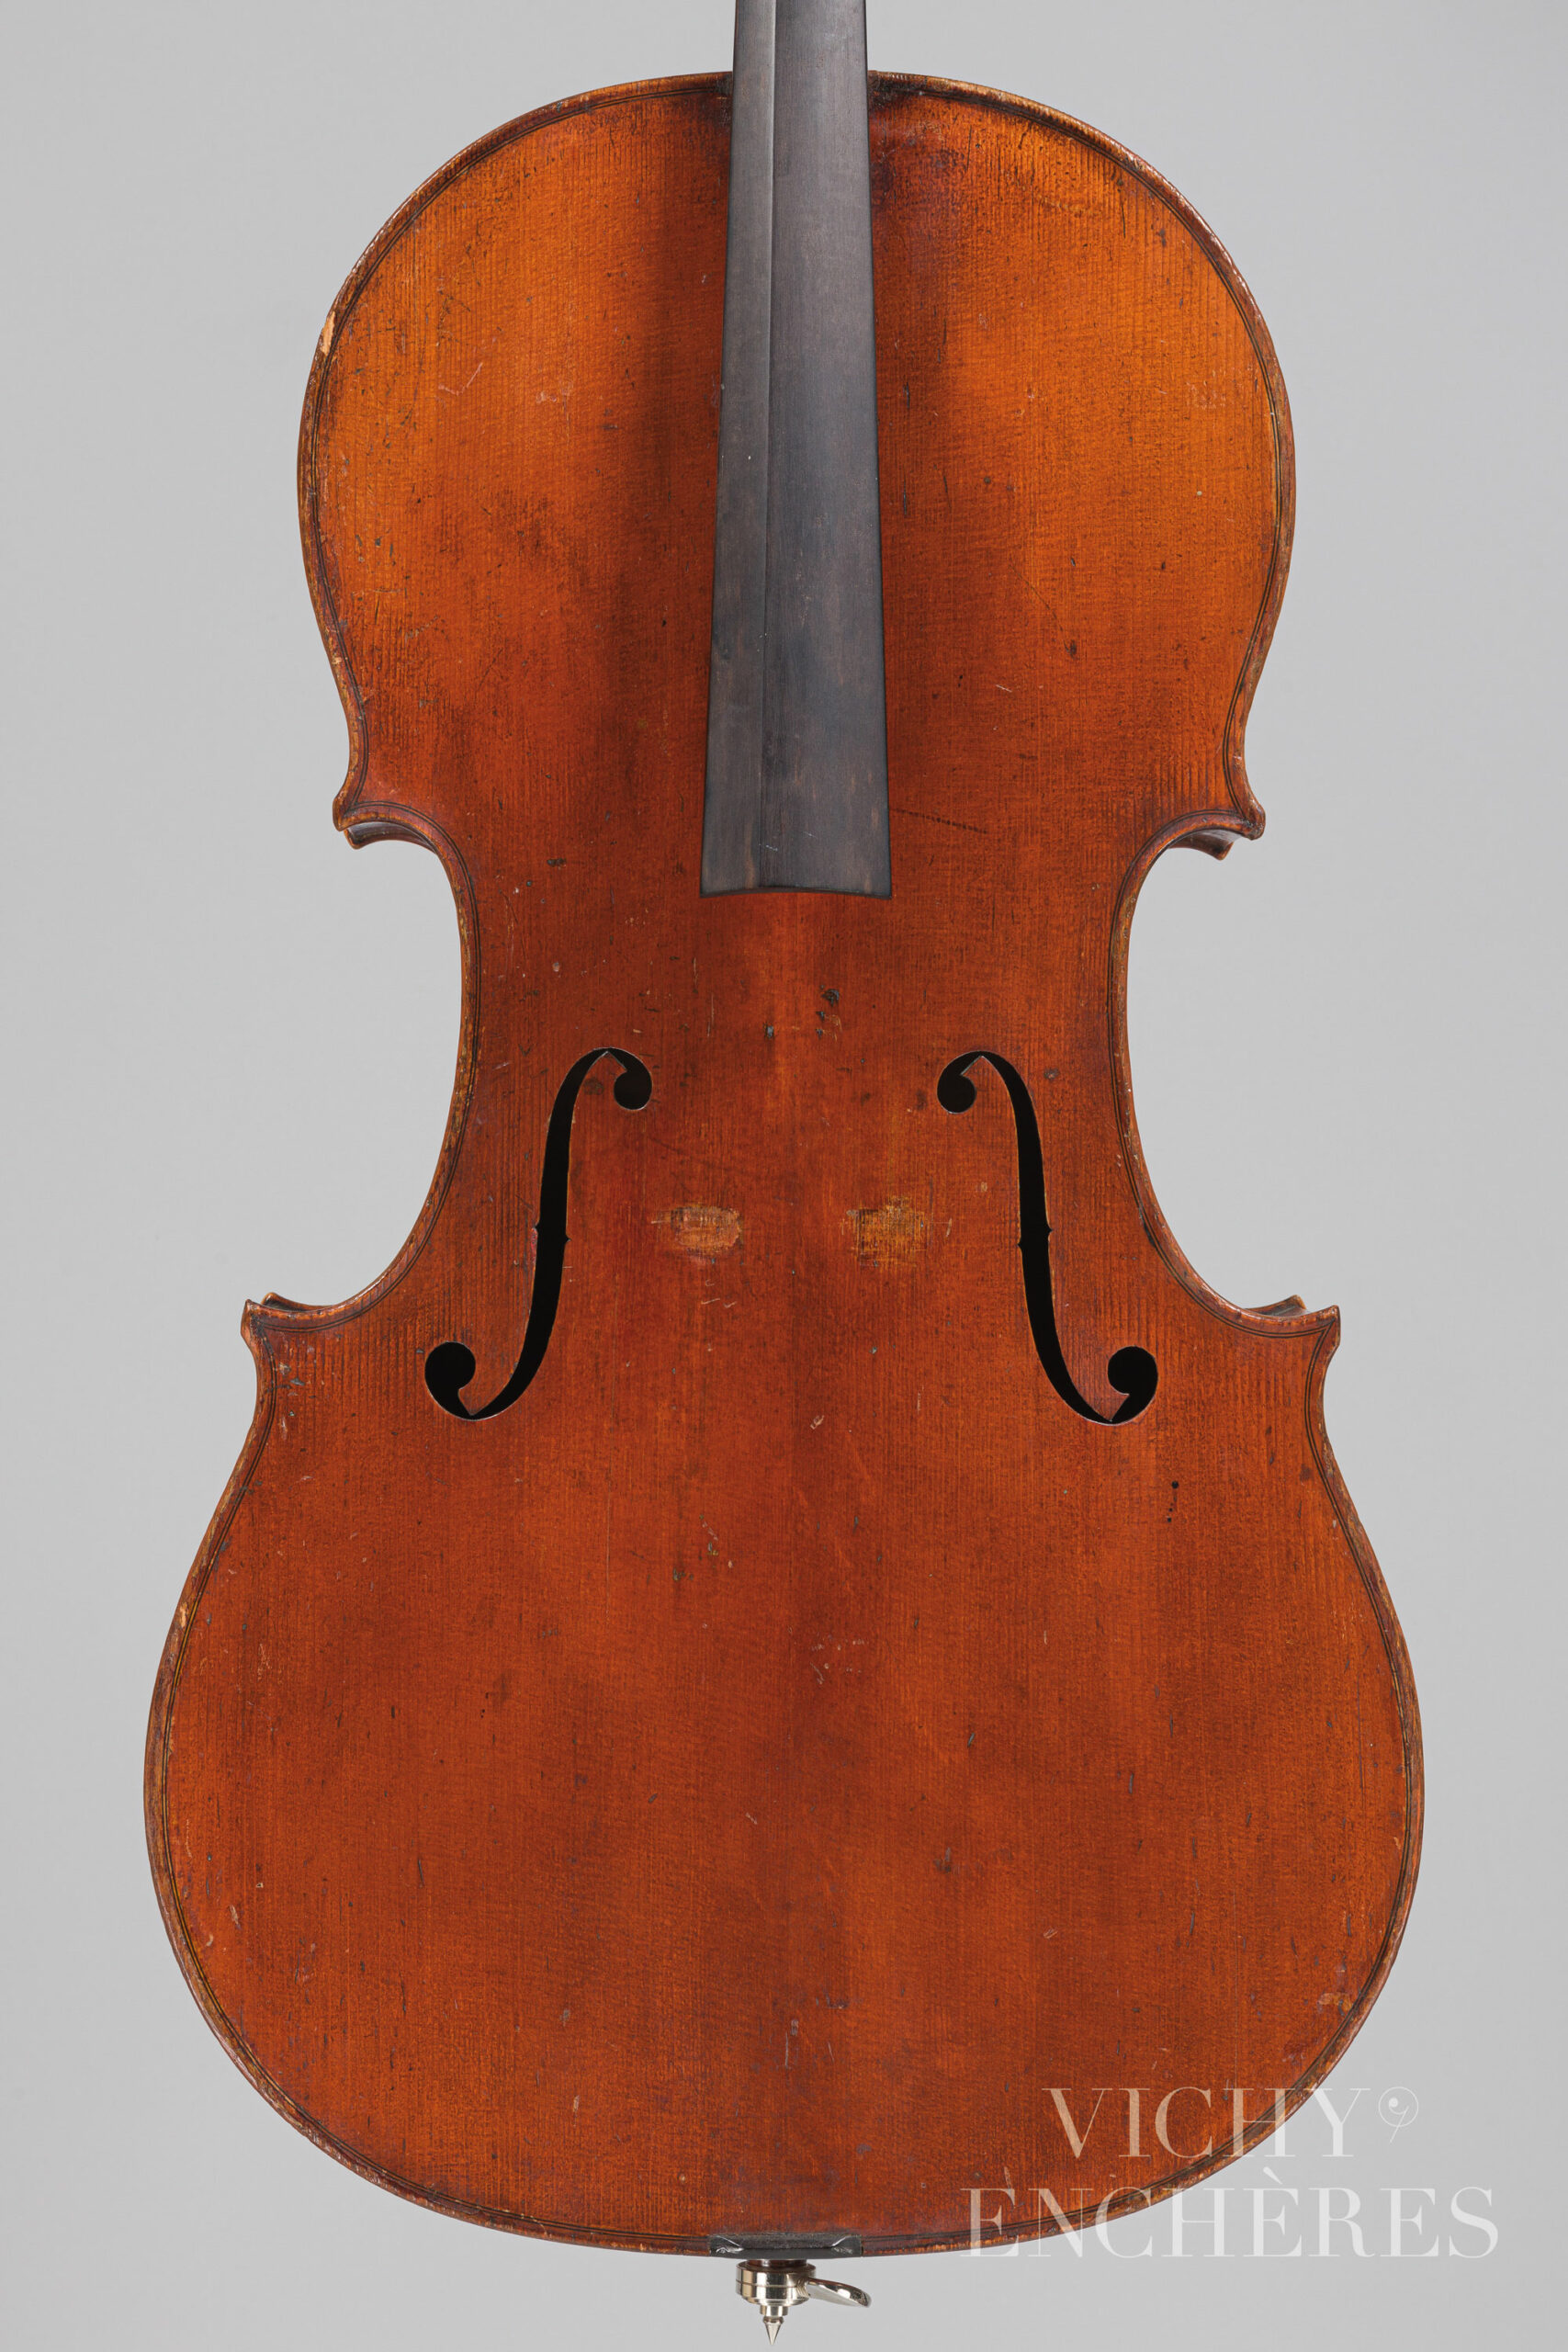 Violoncelle 1/2 de Nicolas VUILLAUME Instrument mis en vente par Vichy Enchères le 1er décembre 2022 © Christophe Darbelet